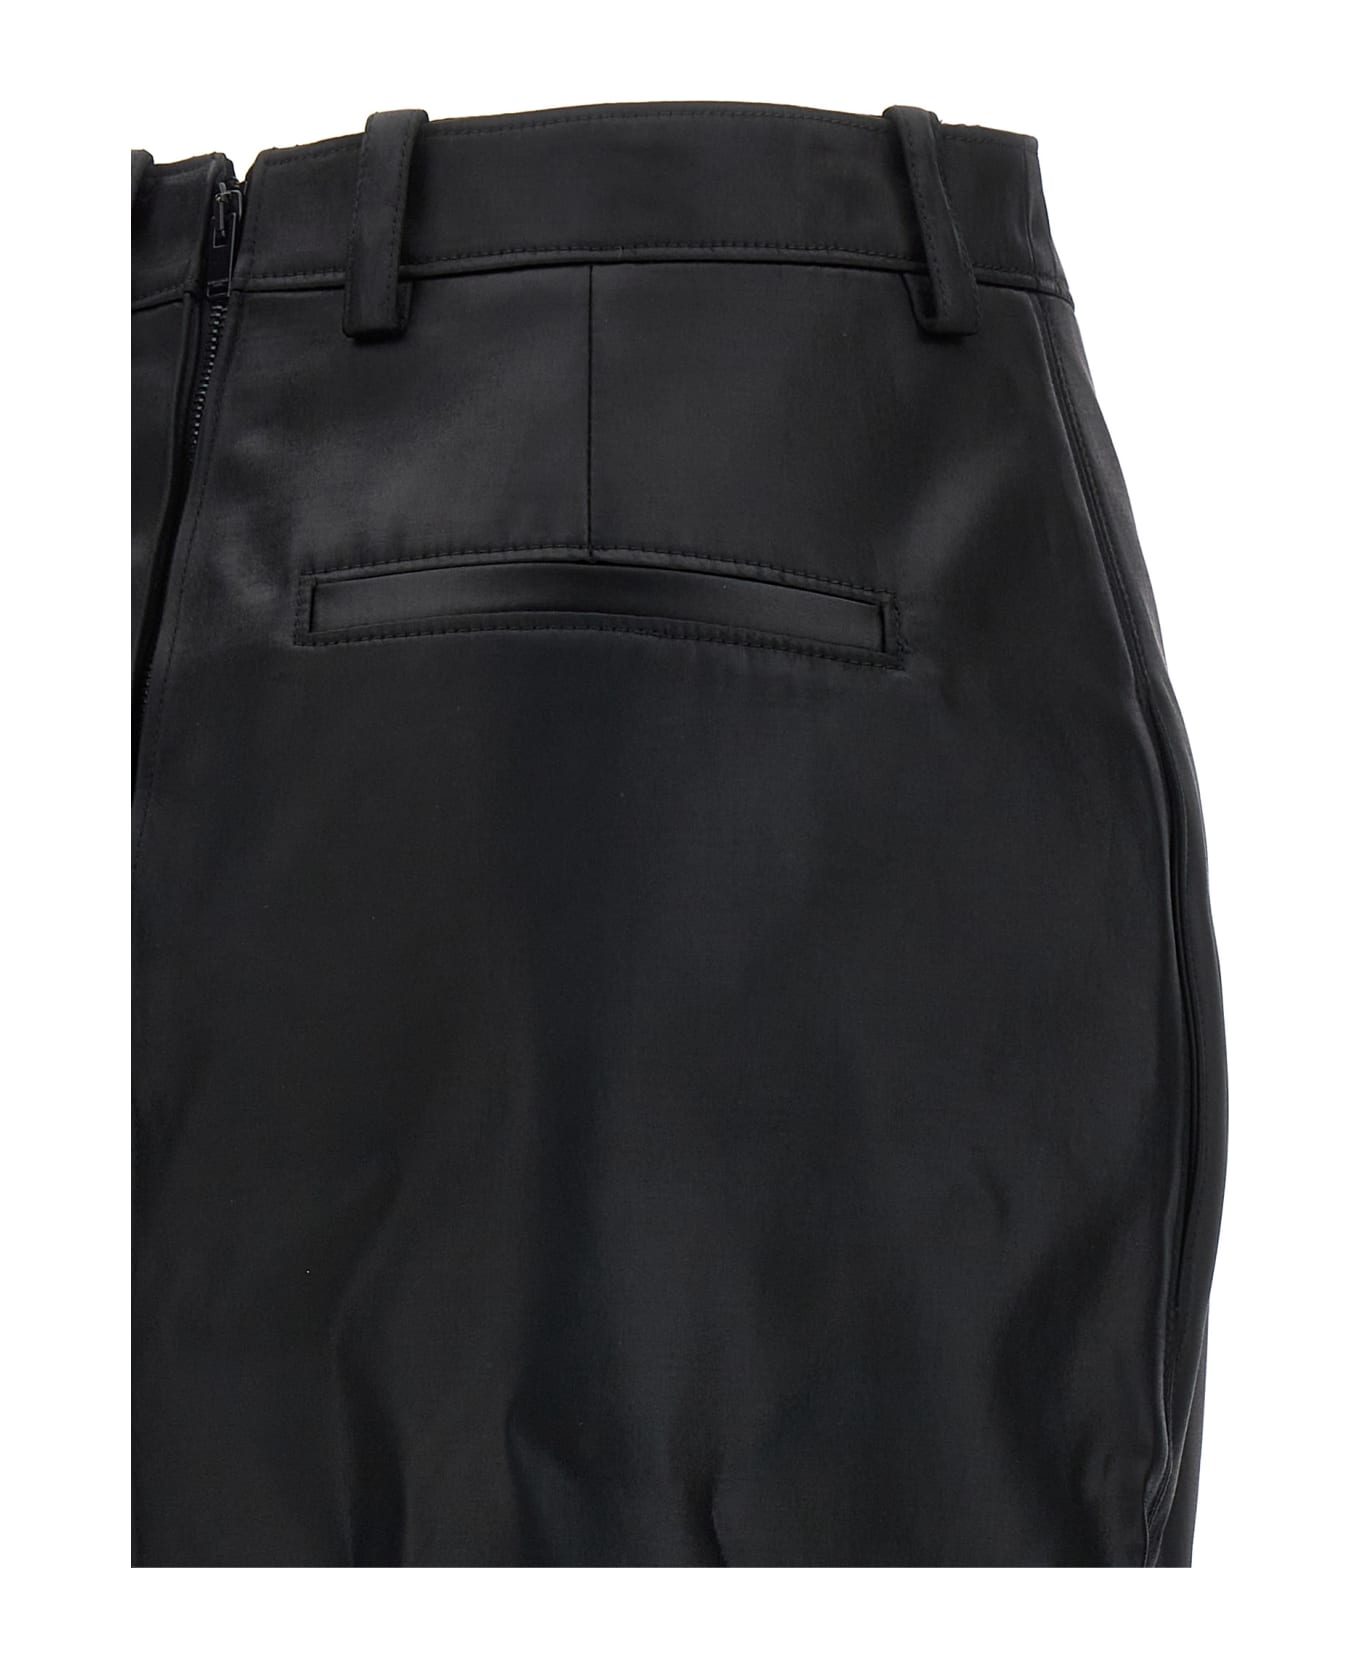 Saint Laurent Gabardine Skirt - Black